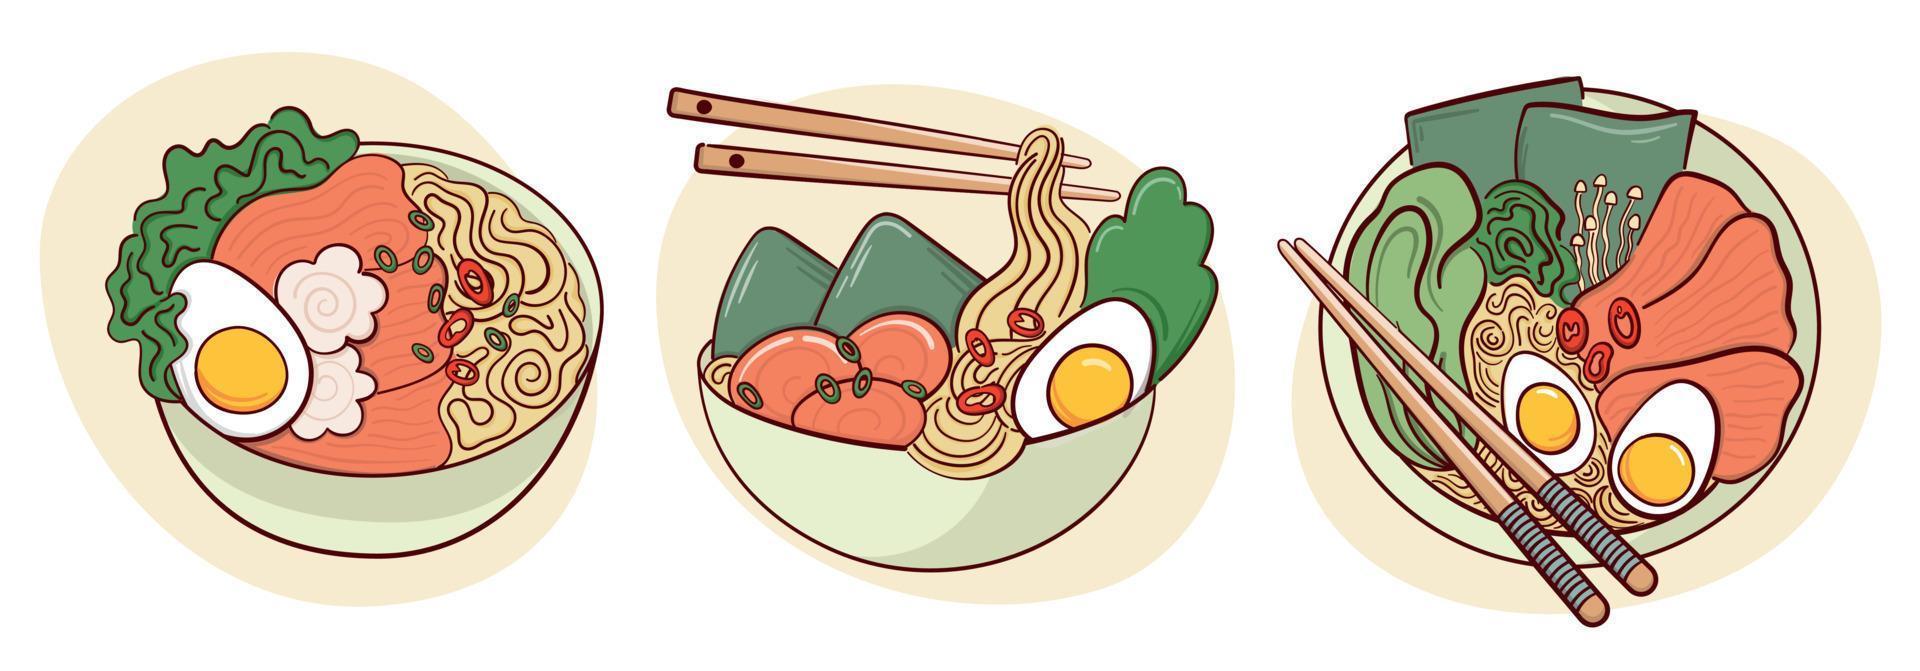 trek ramen soep in een kom vector illustratie. Japans Aziatisch traditioneel voedsel, Koken, menu concept. tekening tekenfilm stijl.